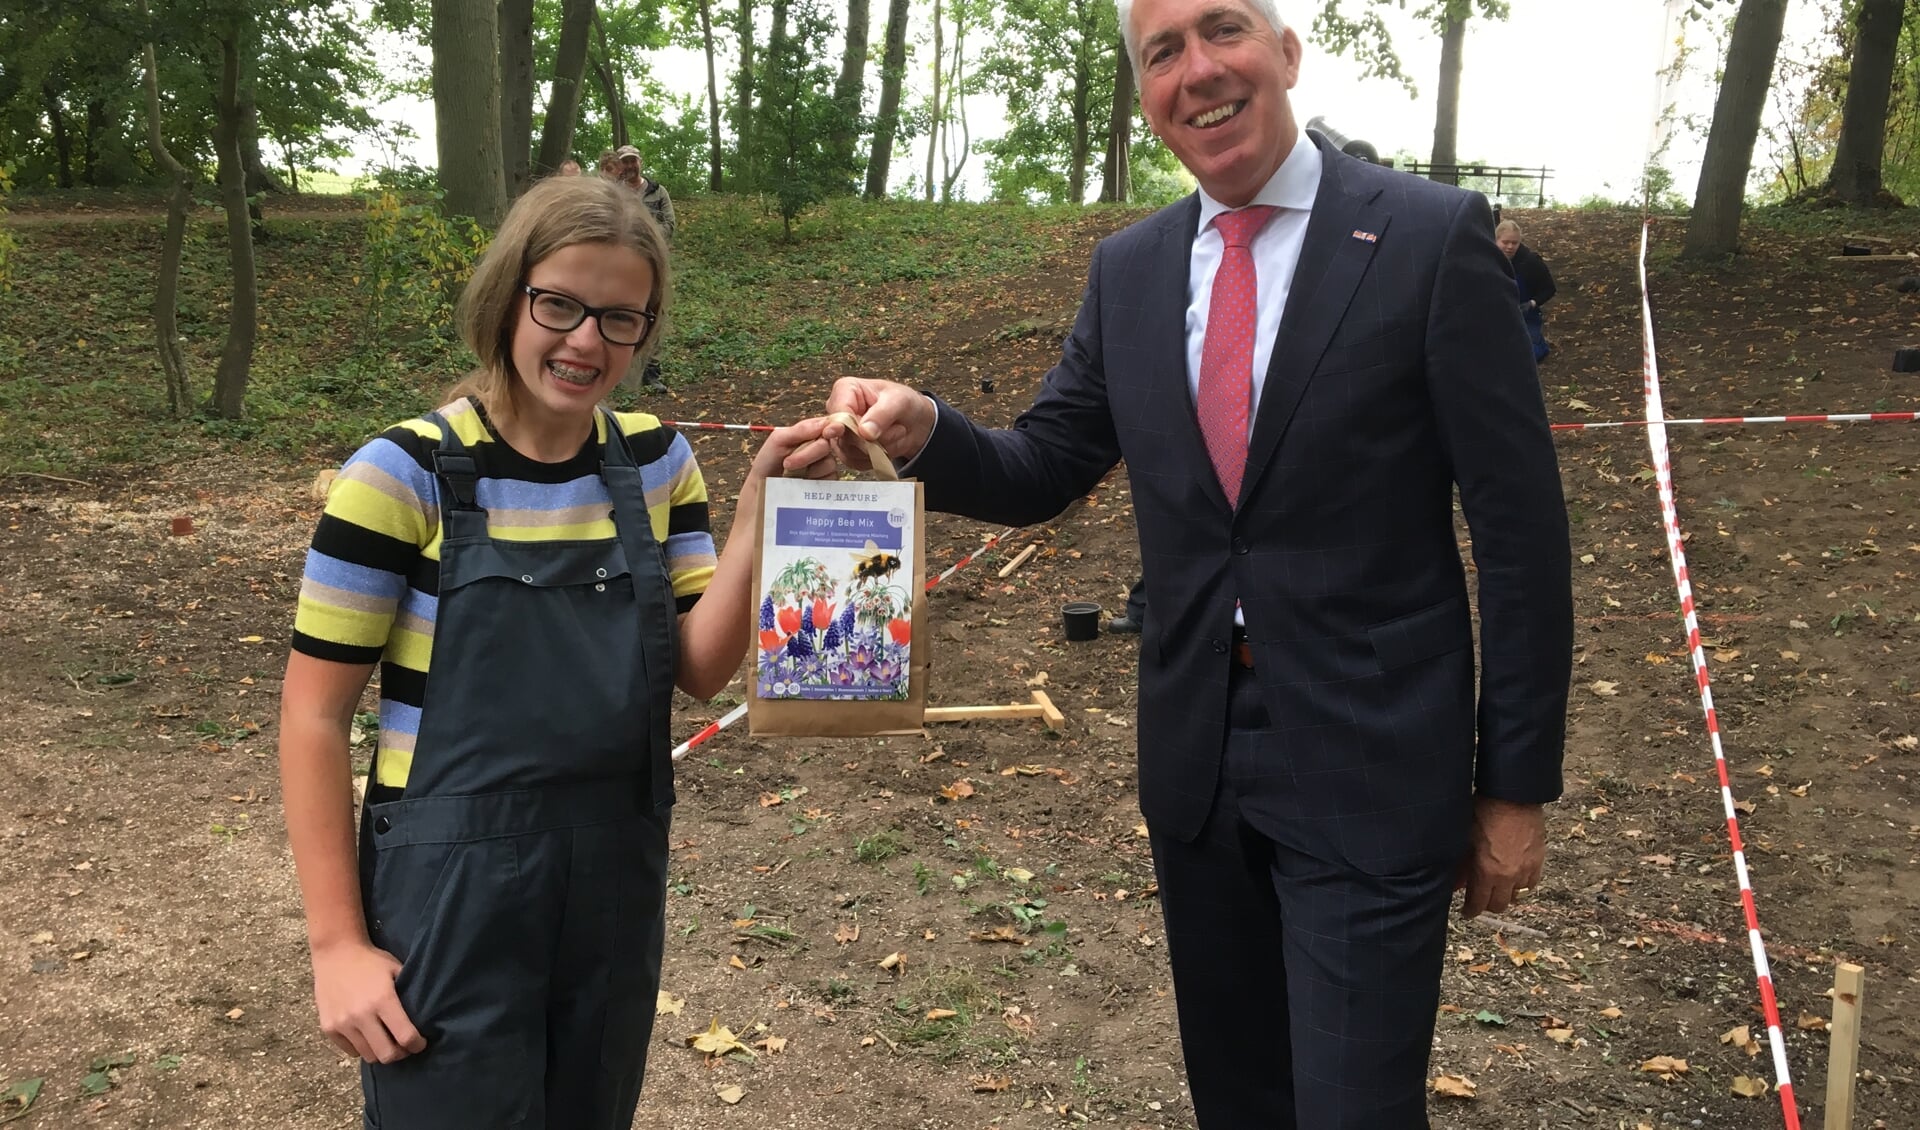 • Wethouder Gijs van Leeuwen overhandigt een zakje met bloembollen aan Tiana van Hemert uit Nieuwaal. Zij is leerling van praktijkschool De Brug.